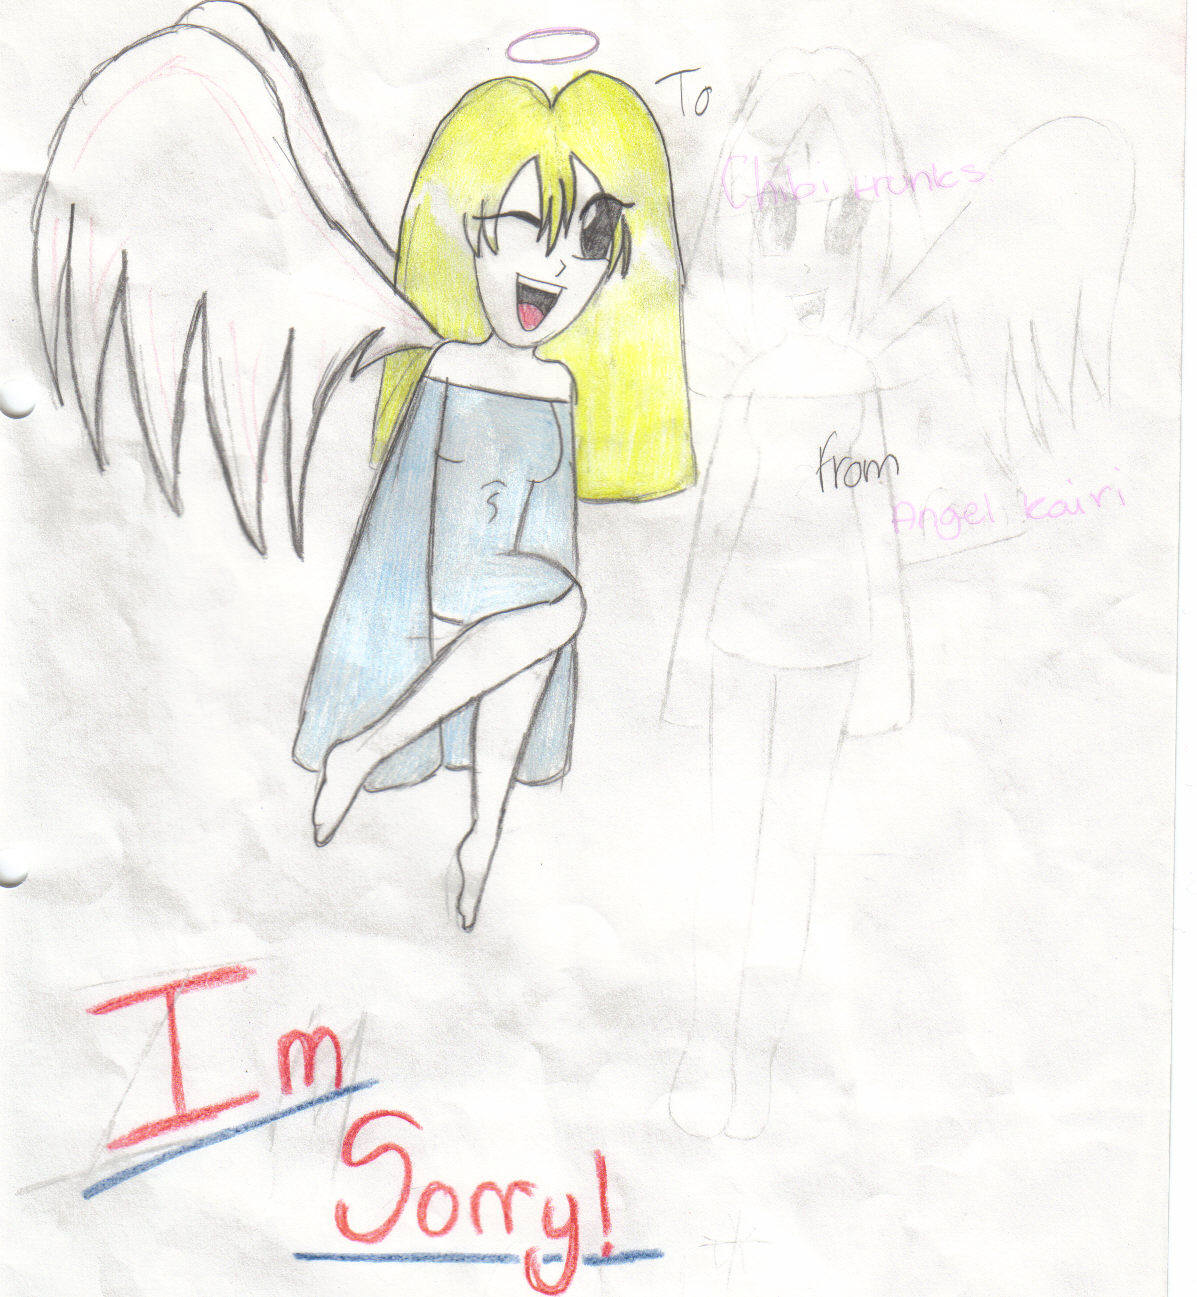 I'm Sorry! by Angel_Kairi